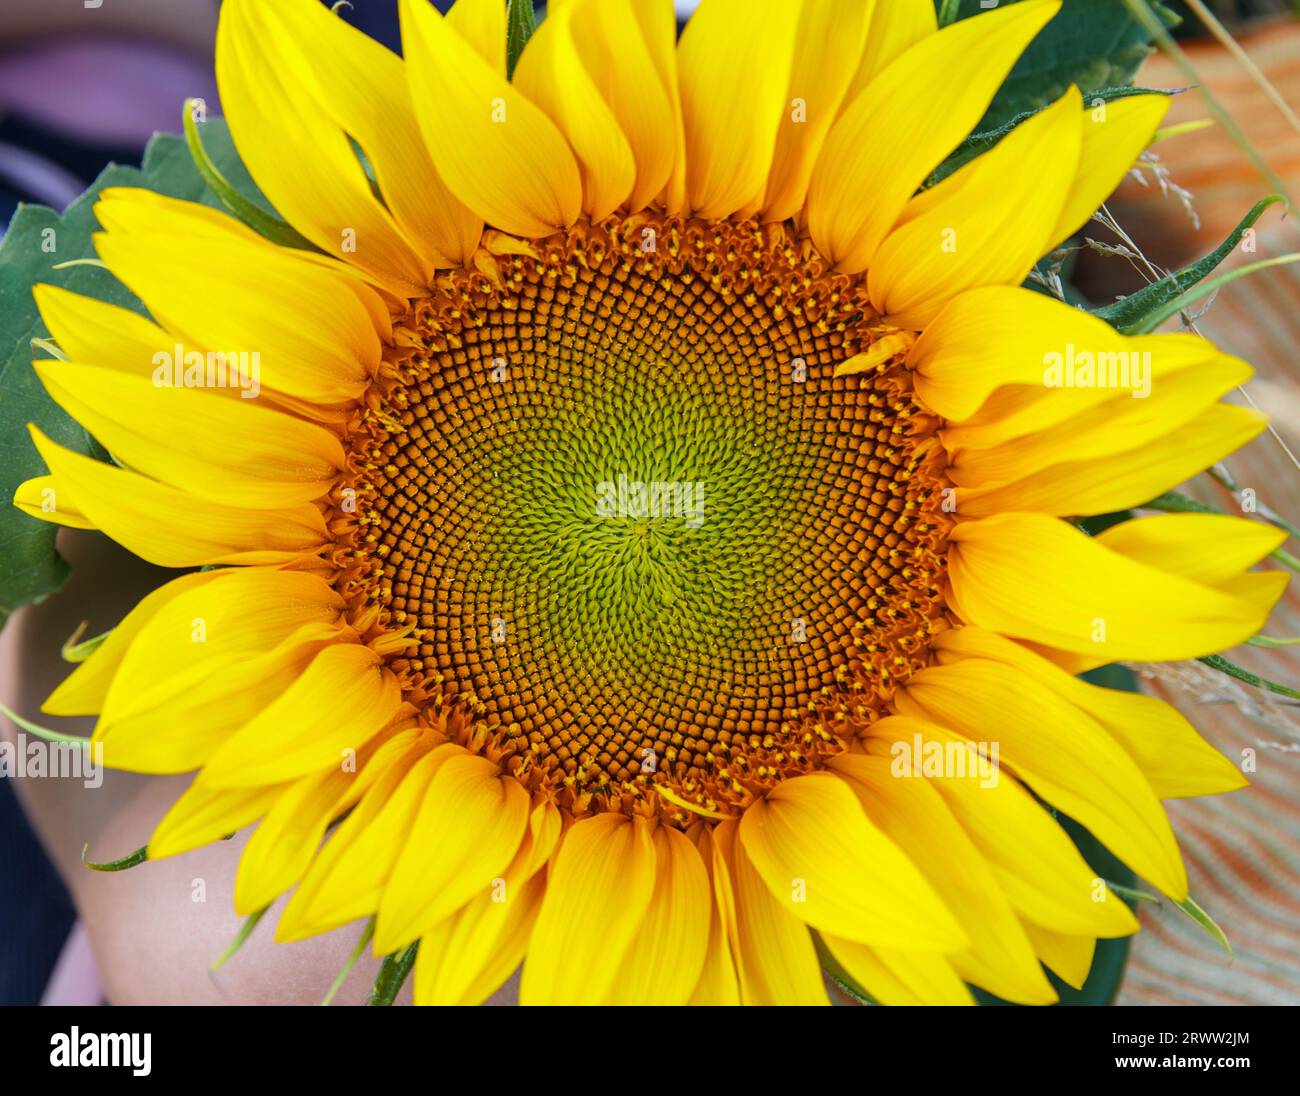 Floraison de tournesol, belle fleur ronde avec des pétales jaunes et des feuilles vertes, fleurie en été Banque D'Images